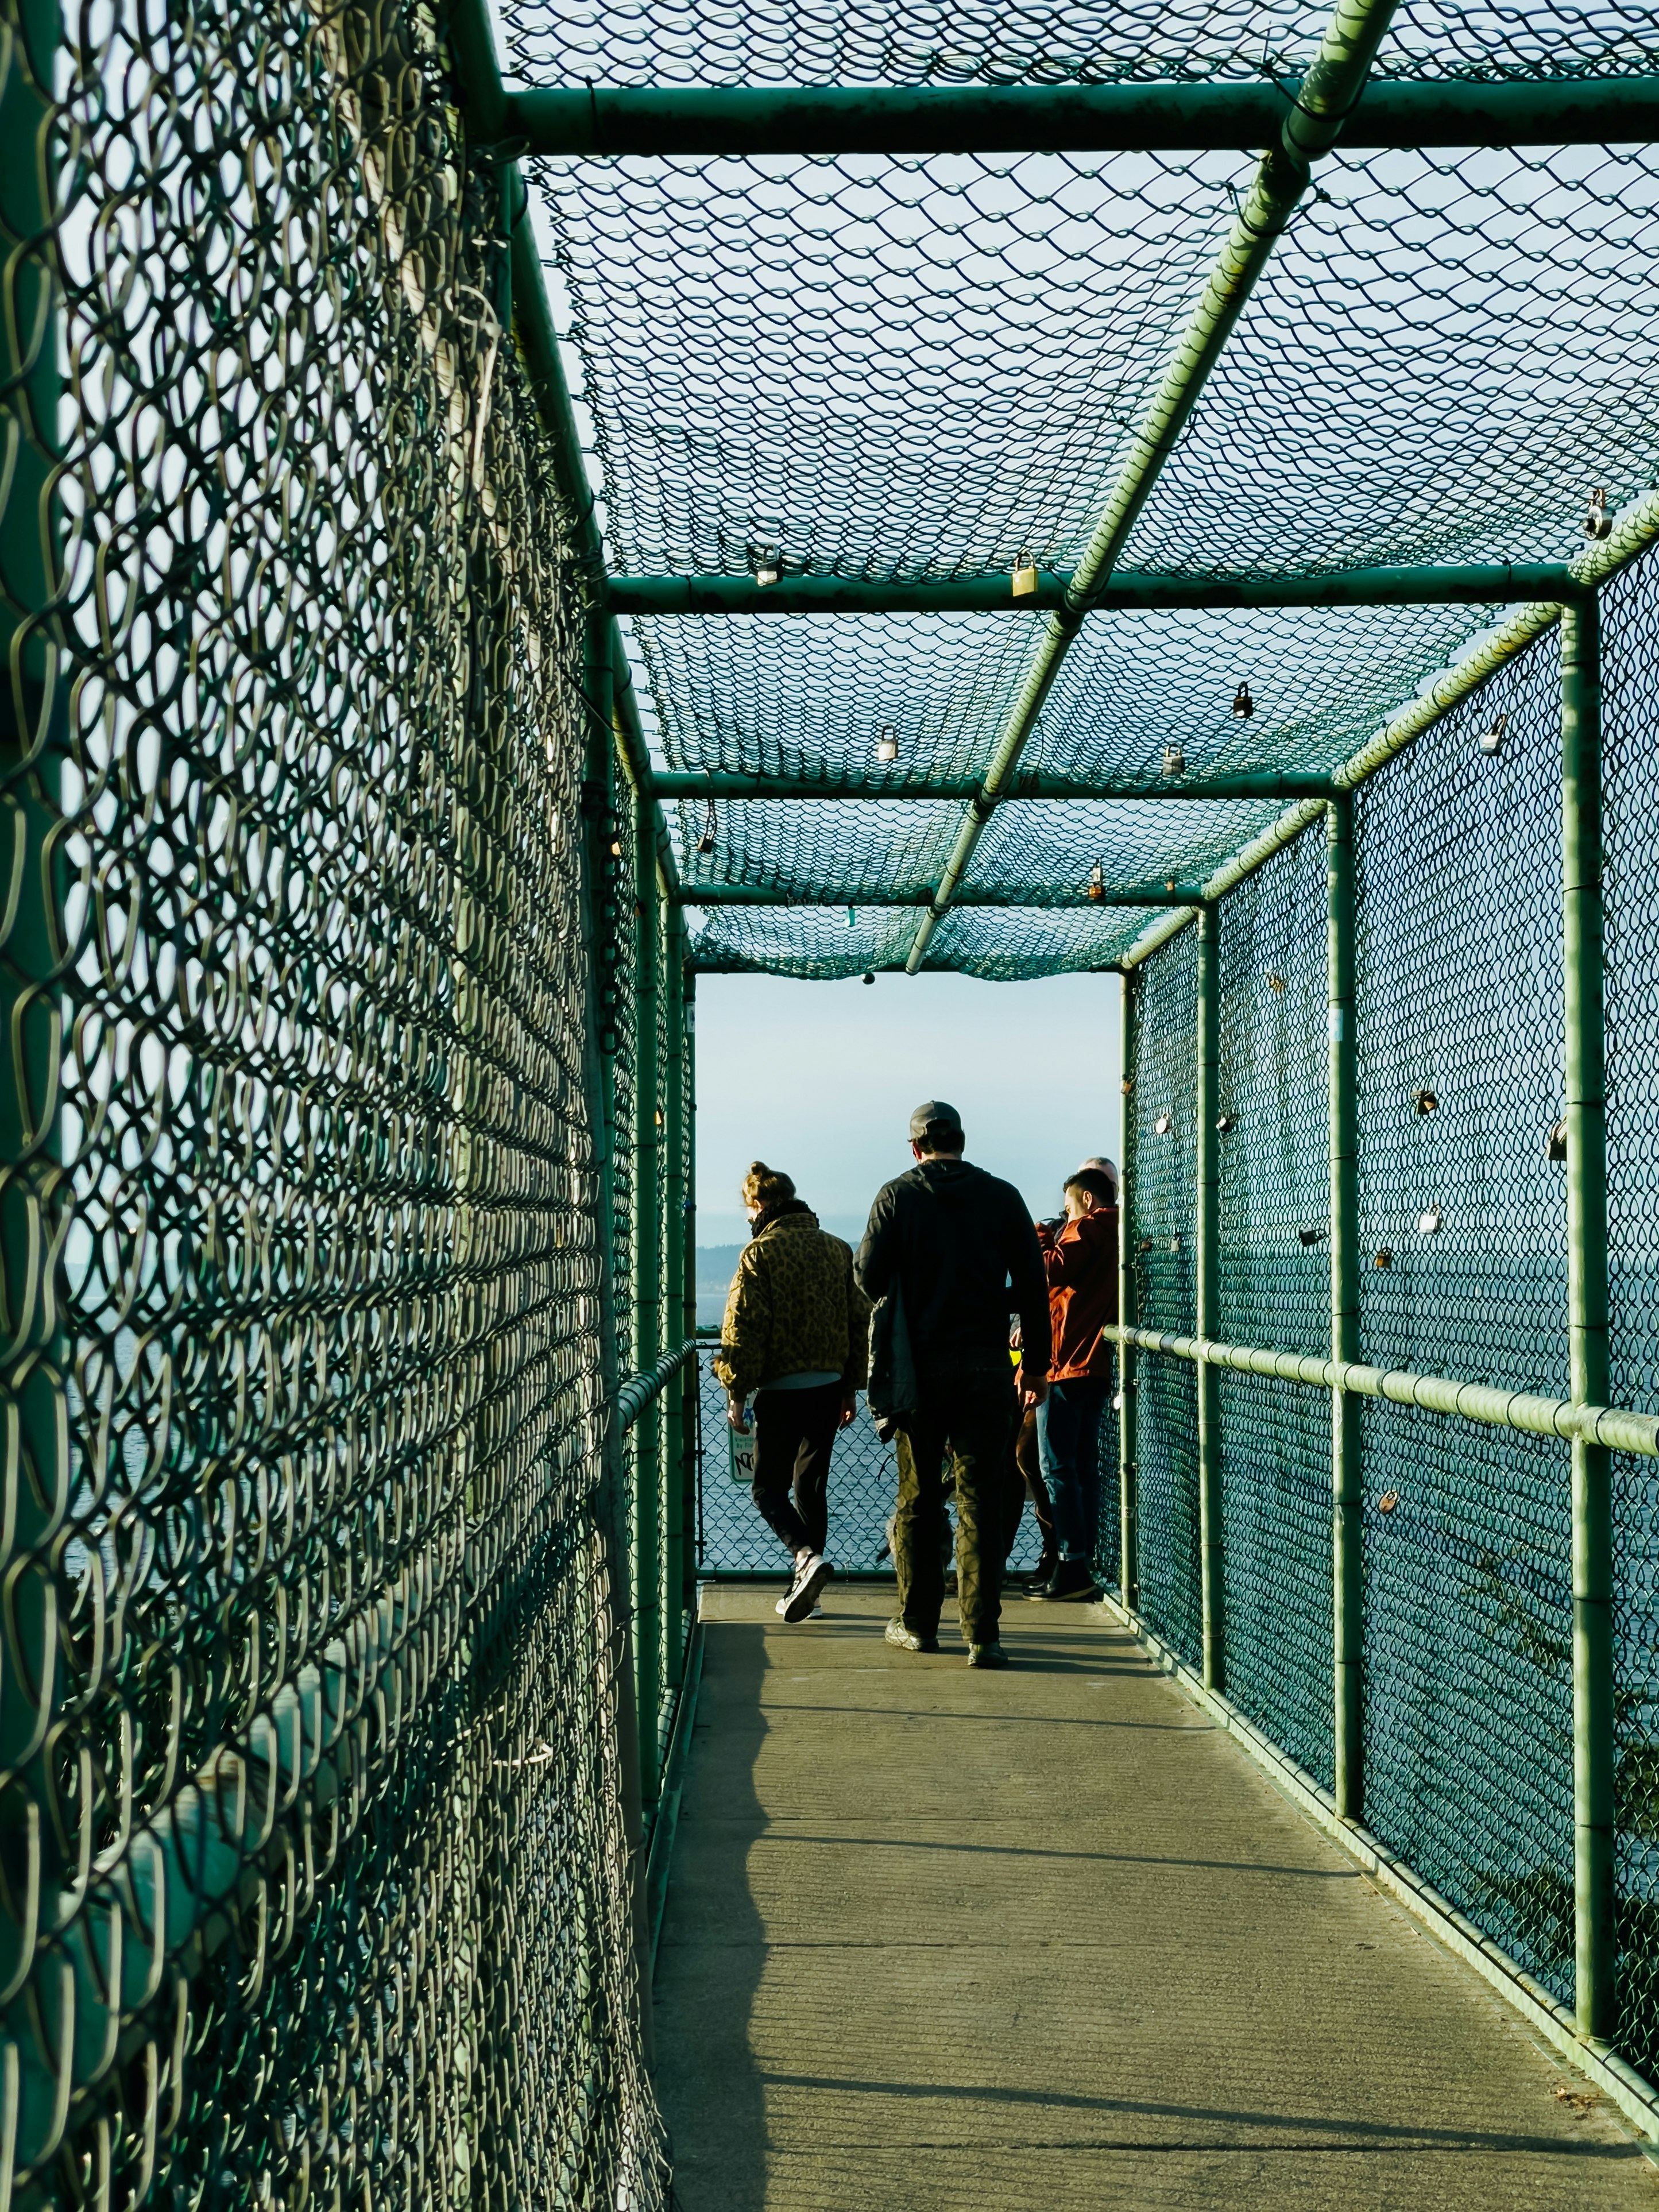 2 women walking on bridge during daytime